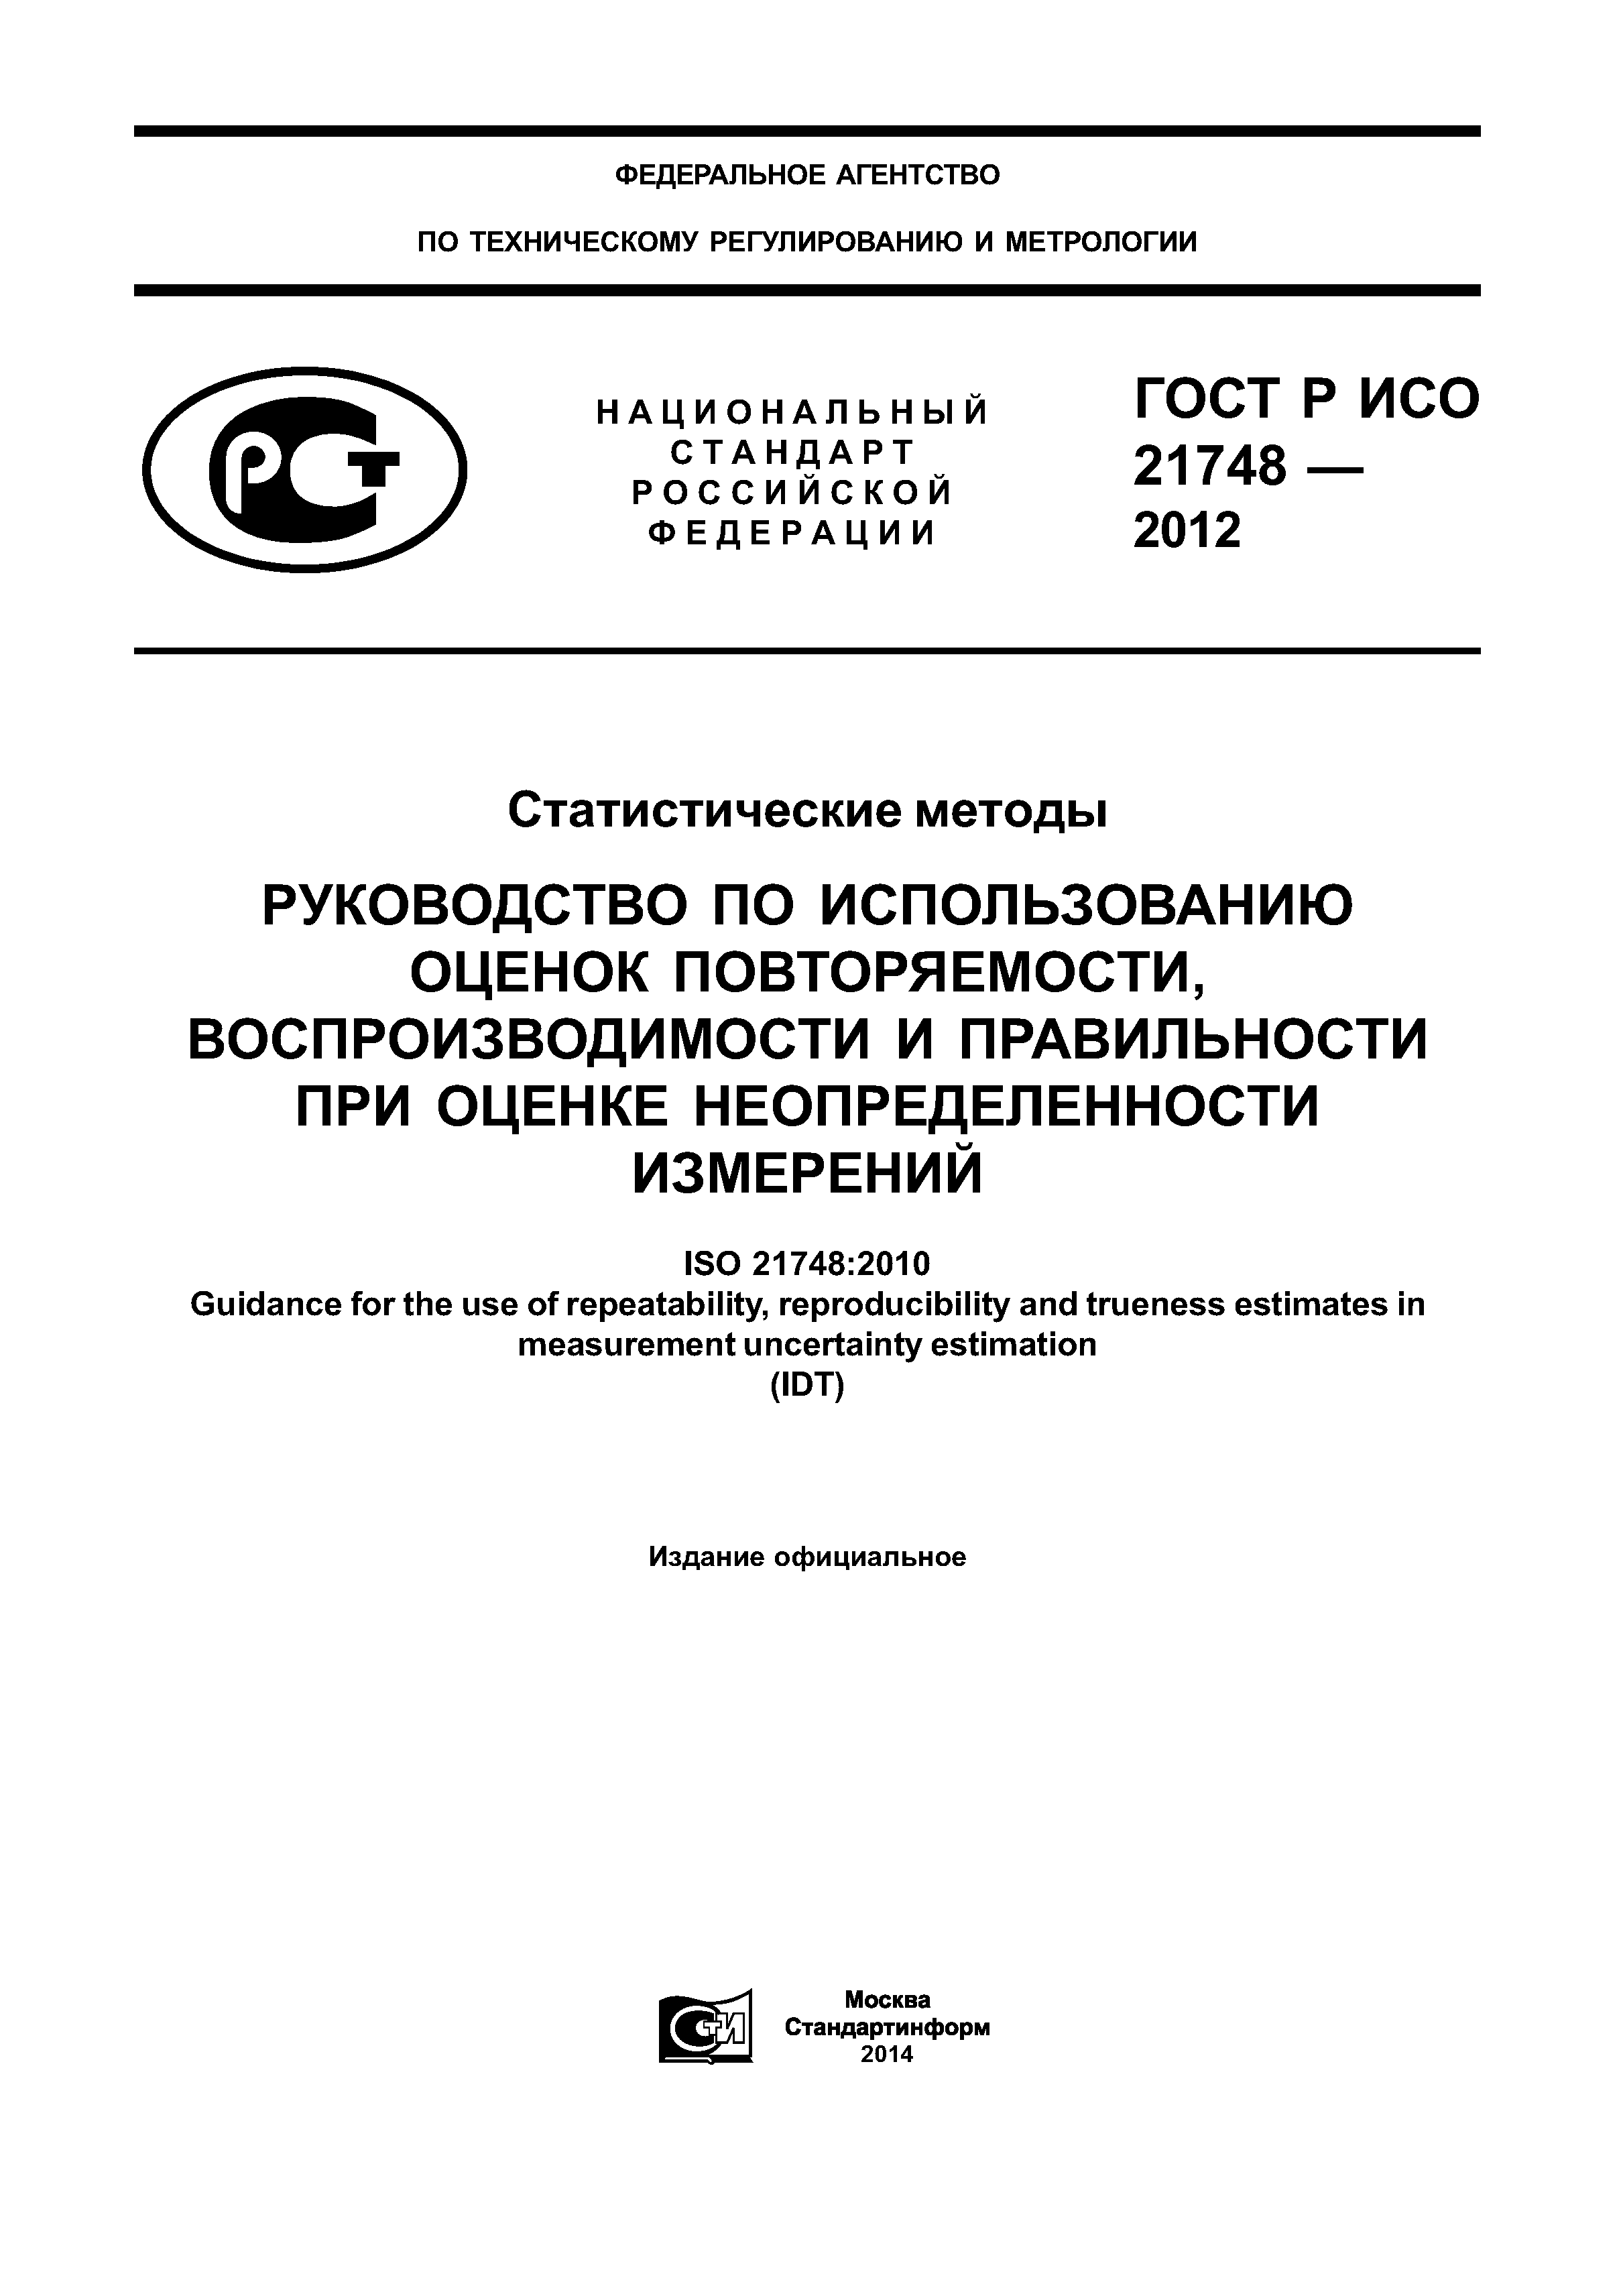 ГОСТ Р ИСО 21748-2012